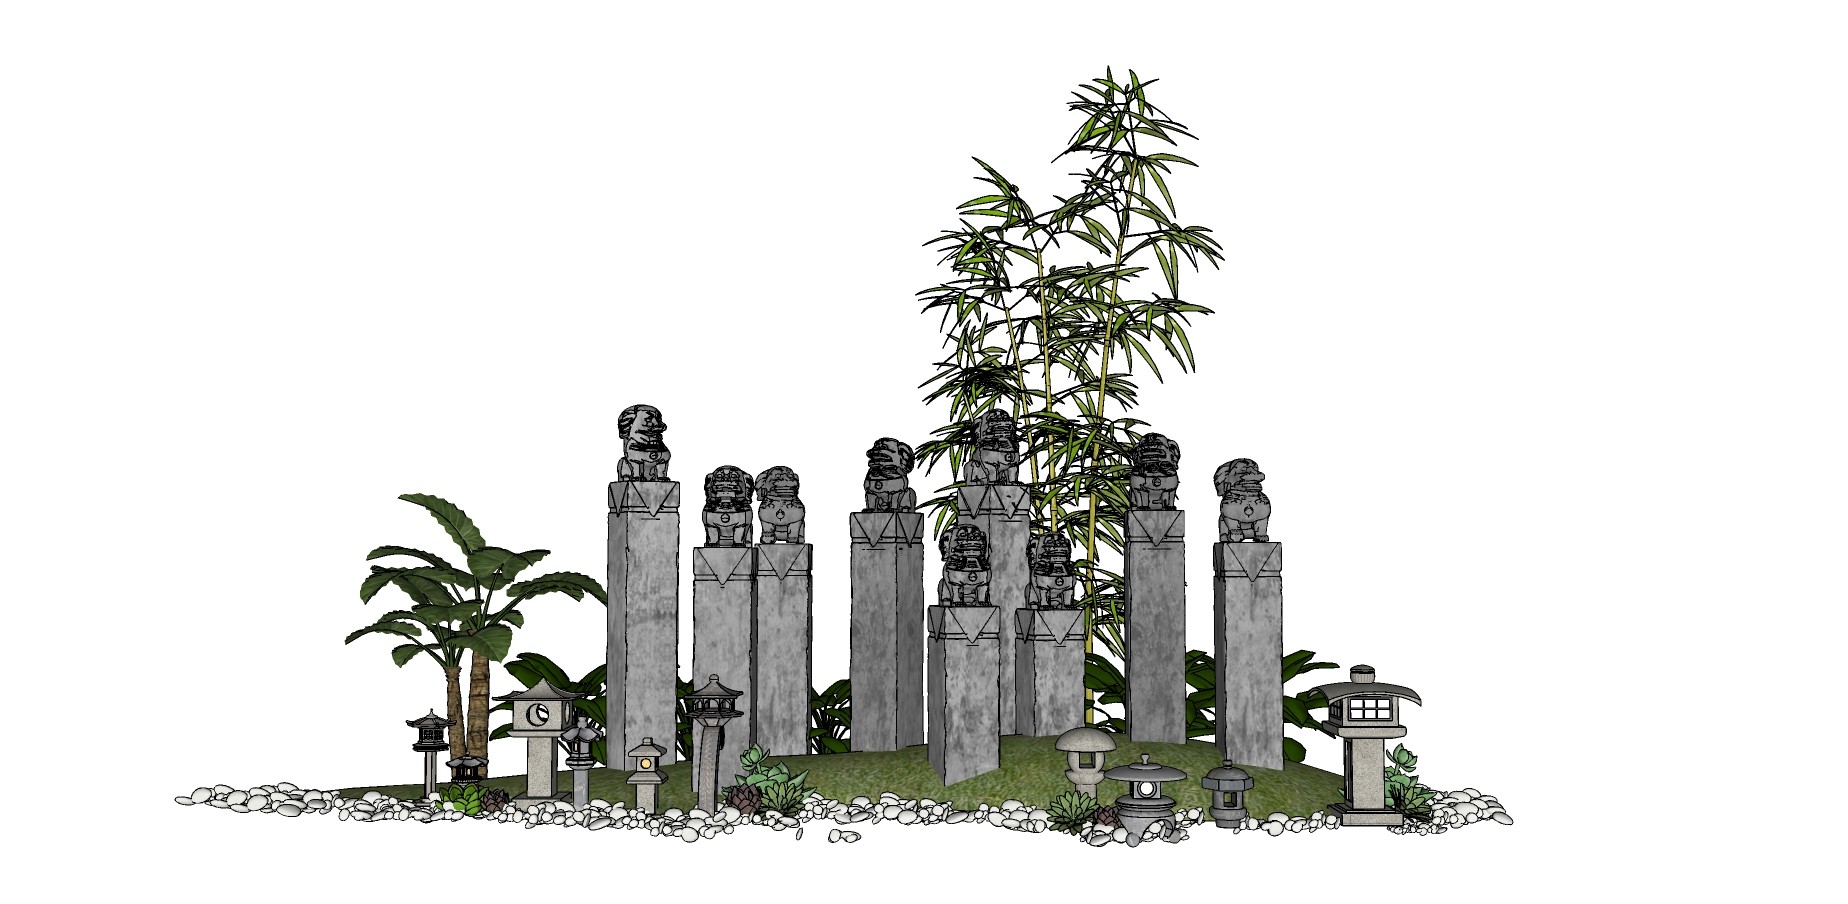 12中式风格庭院景观  拴马桩 日式石灯鹅卵石 竹子植物组合 庭院景观小品组合su草图模型下载